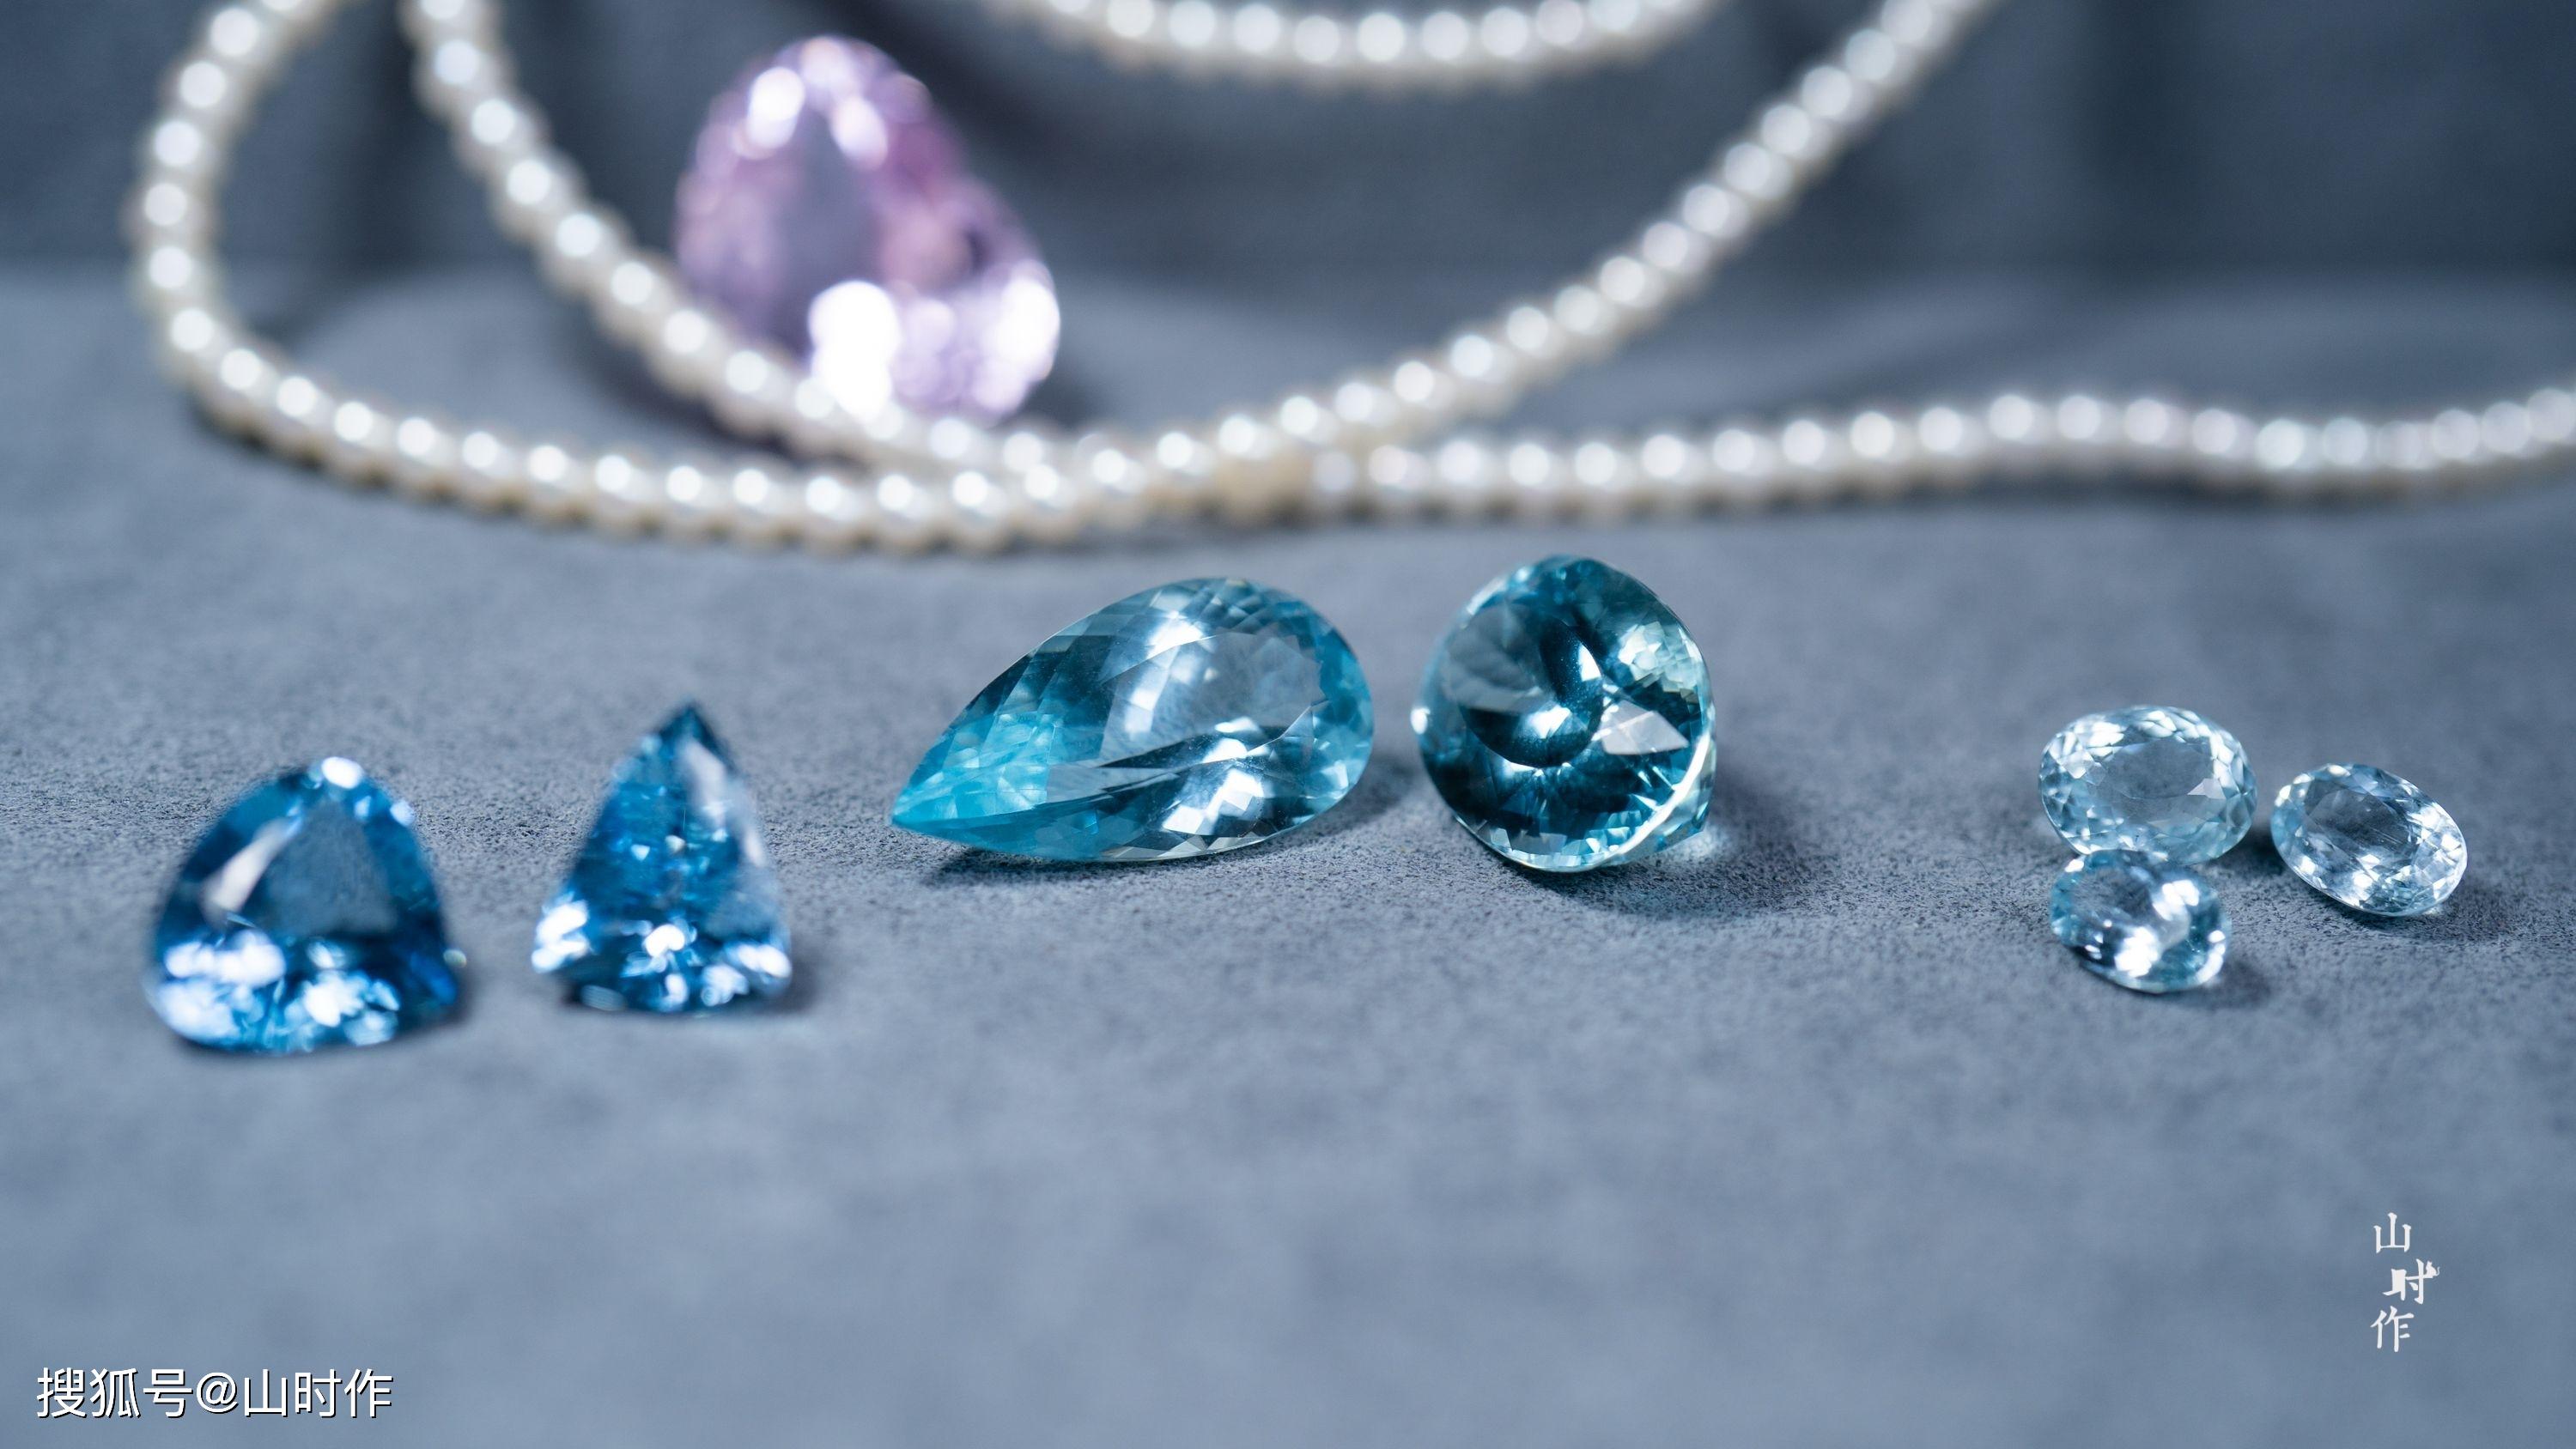 海蓝宝石有哪几种颜色(海蓝宝石最优质的颜色是什么)